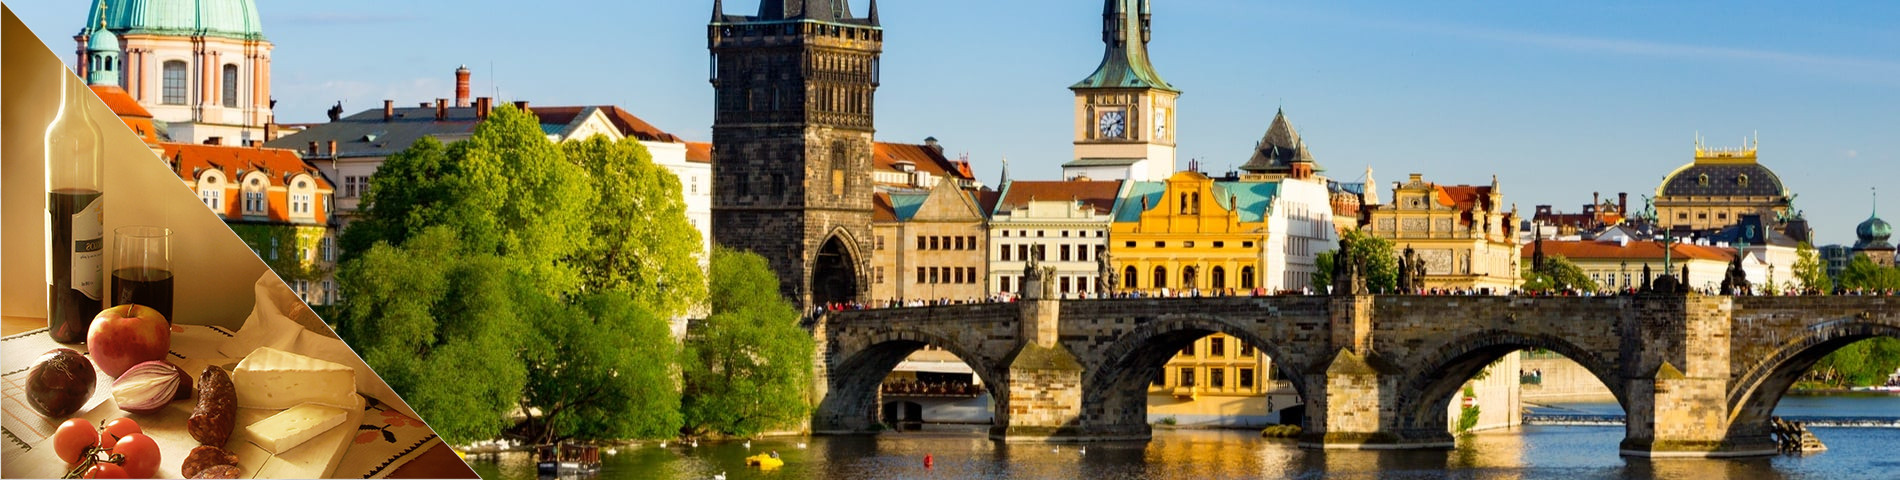 Praag - Tsjechisch & cultuur